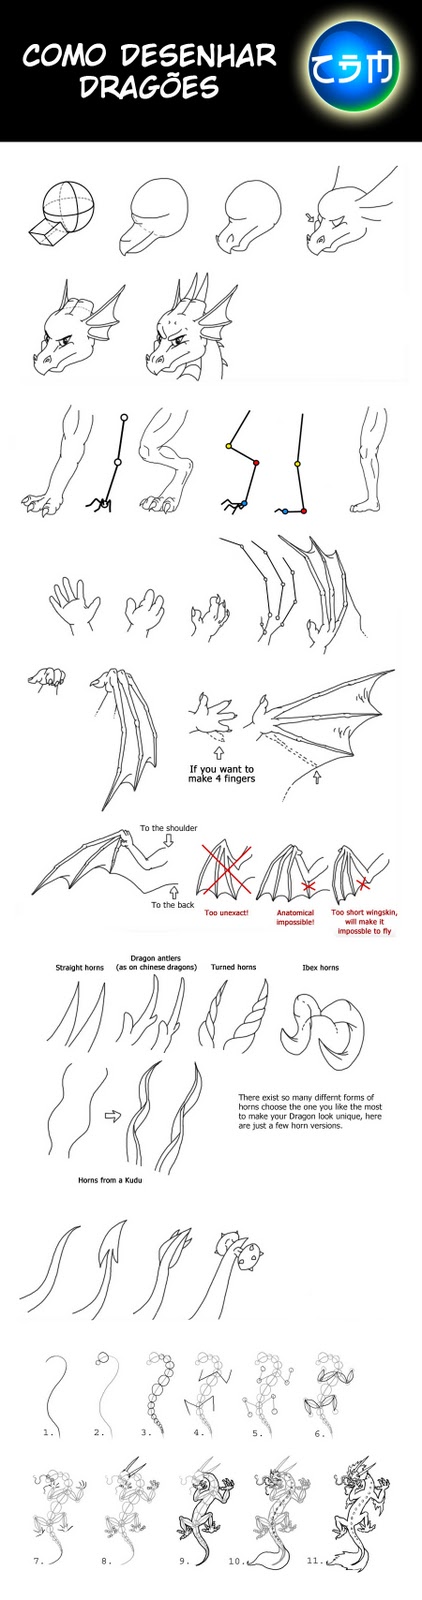 [Tutorial]  Como desenhar Dragões. Como+Desenhar+Drag%25C3%25B5es